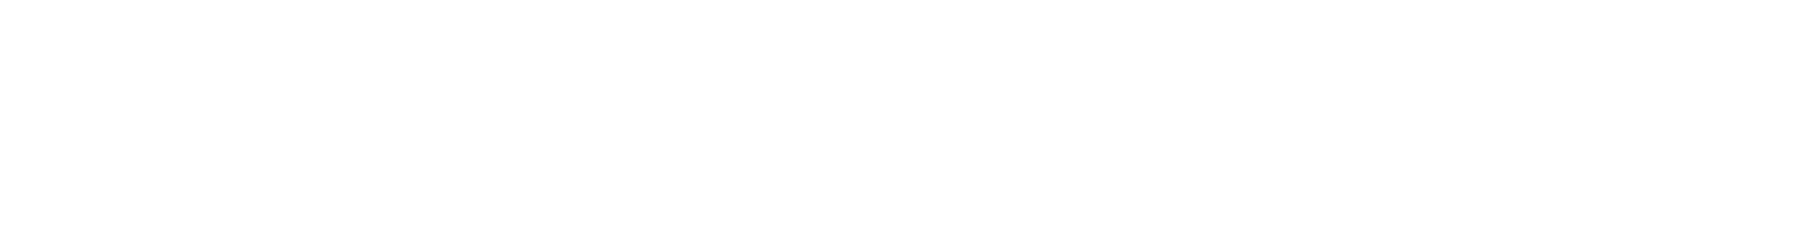 paul brassac logo